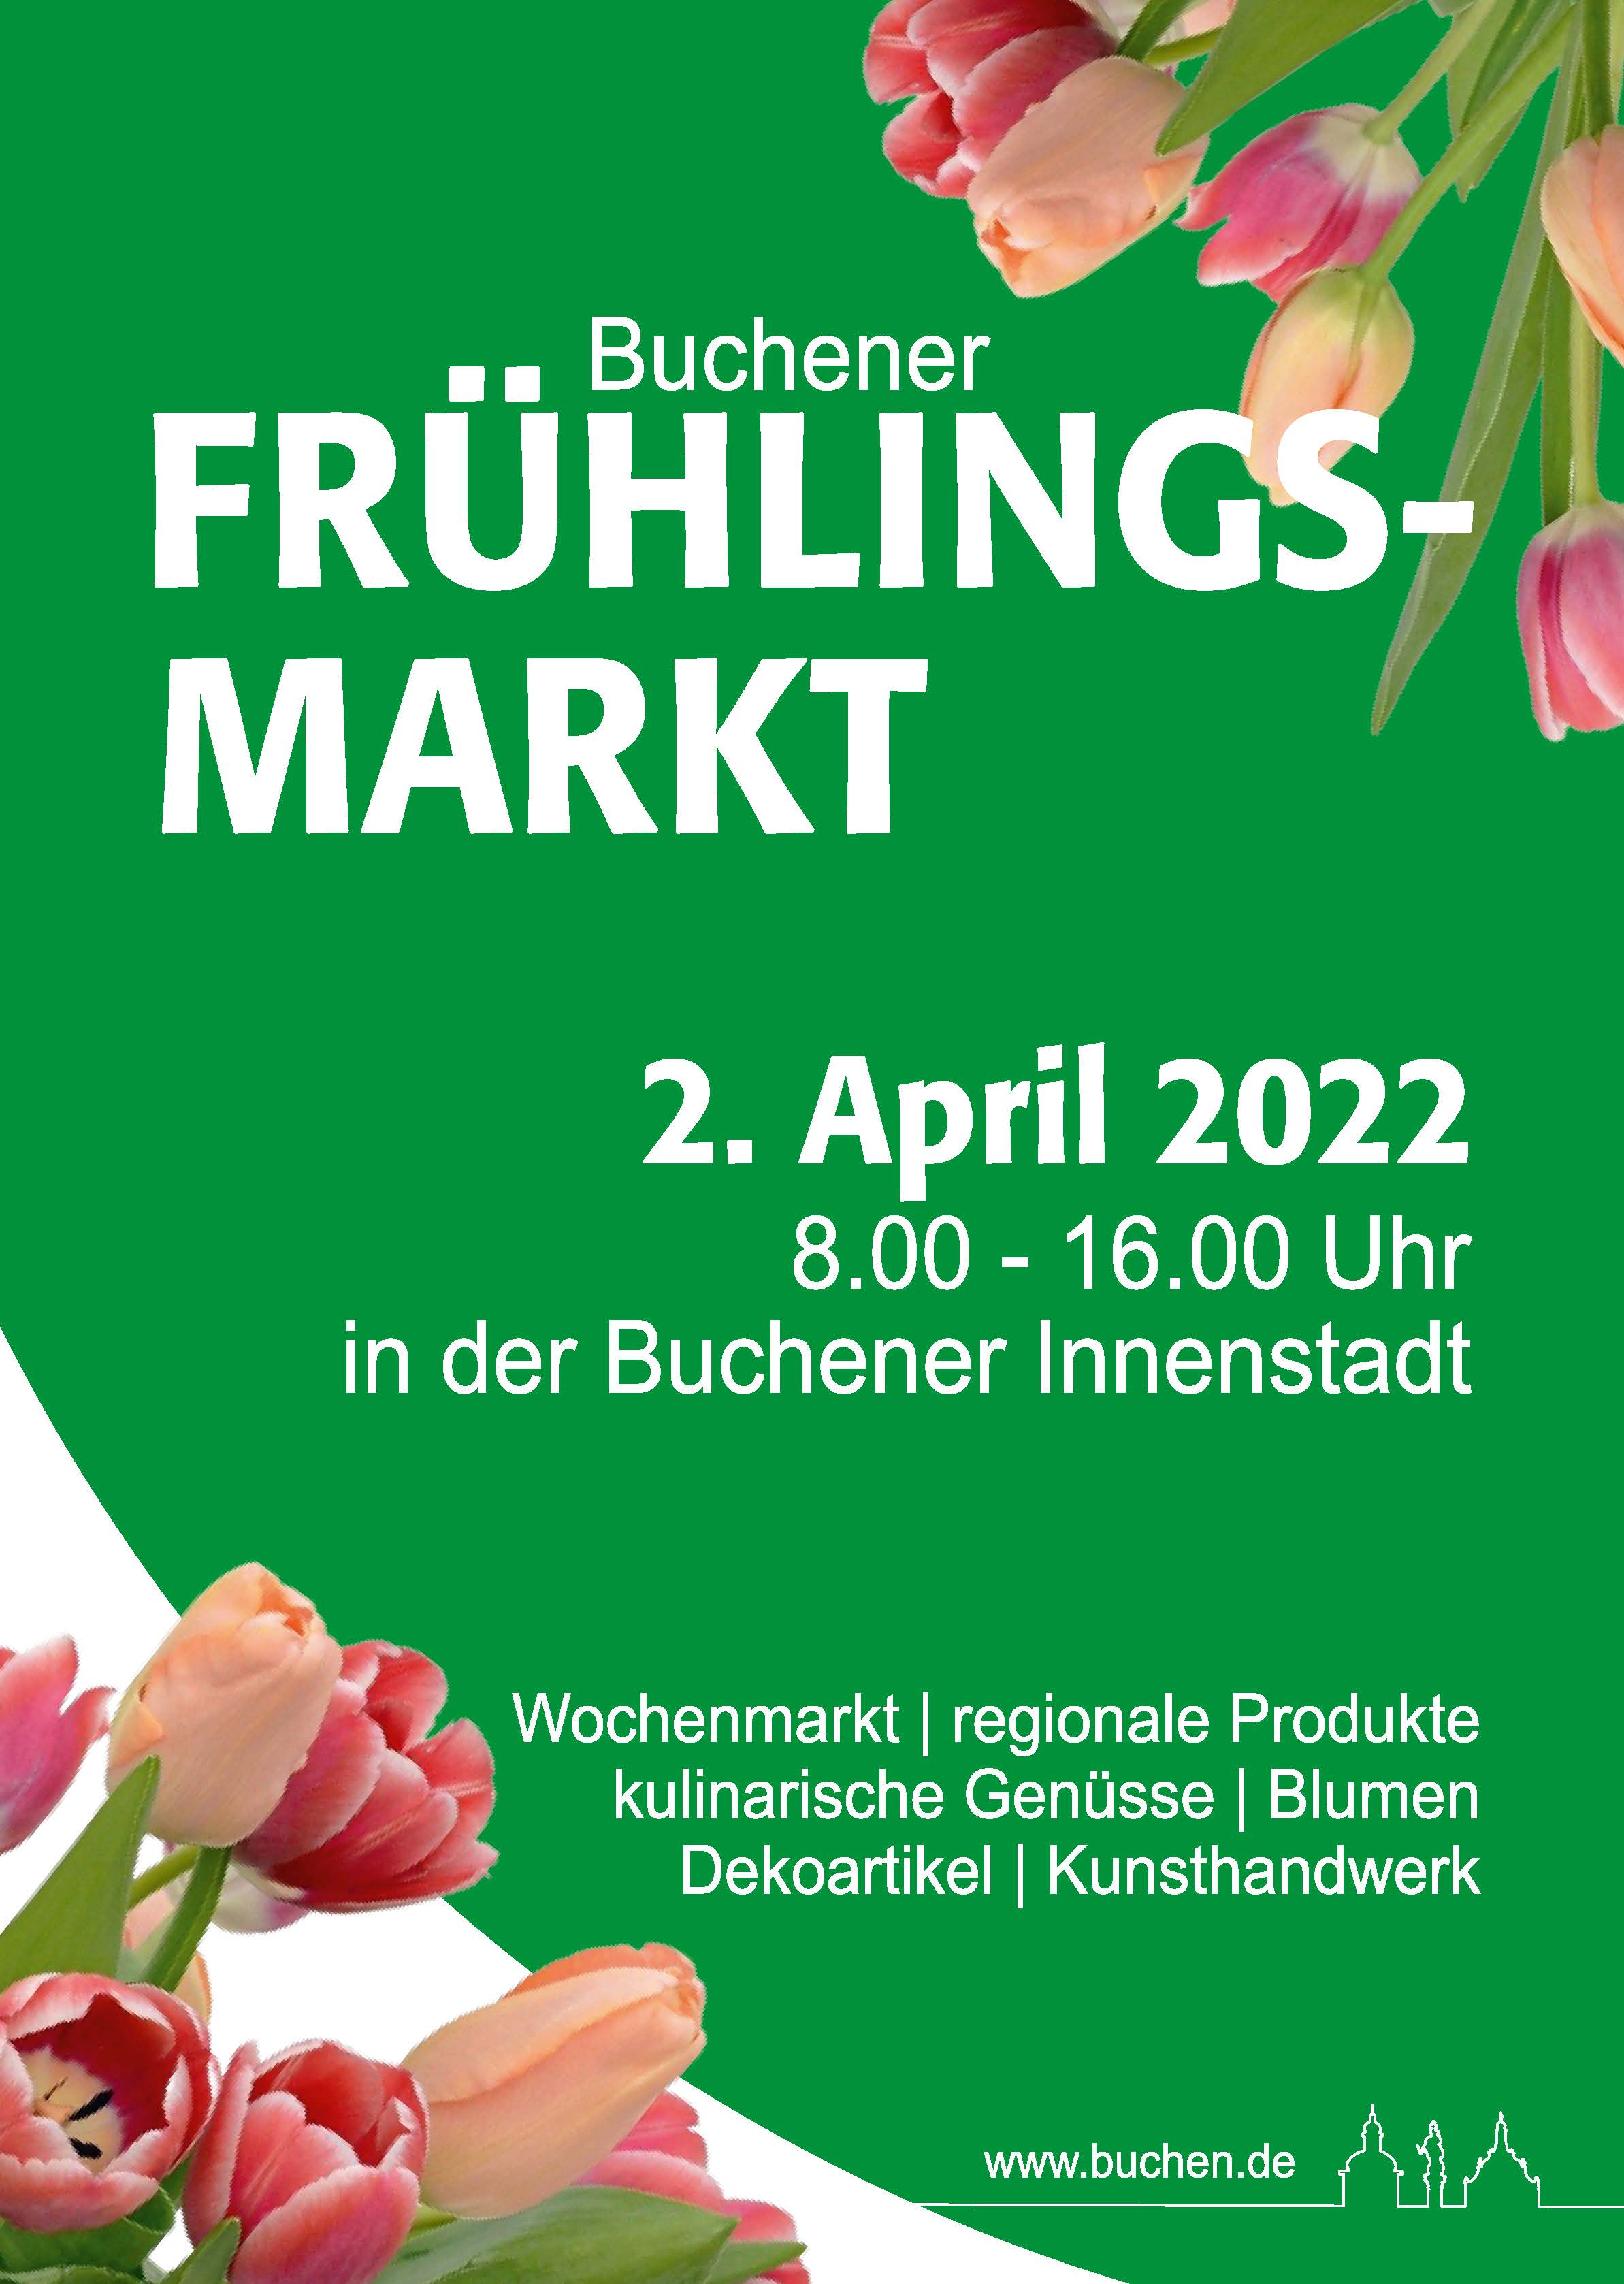 Plakat-Frühlingsmarkt.jpg - 372,27 kB